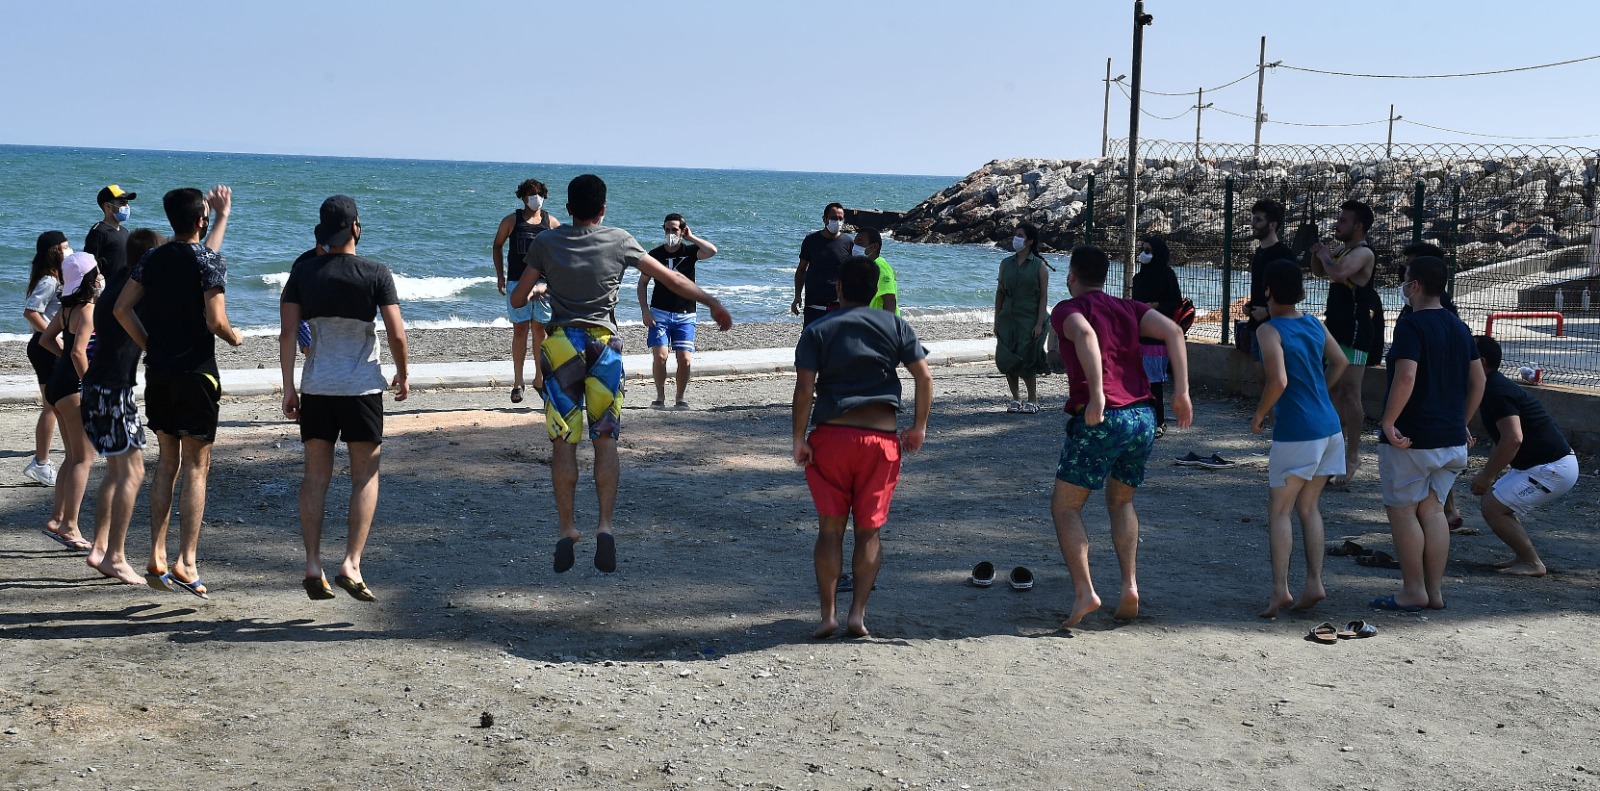 Güvenli plajlar için Büyükşehir’den cankurtaran eğitimi